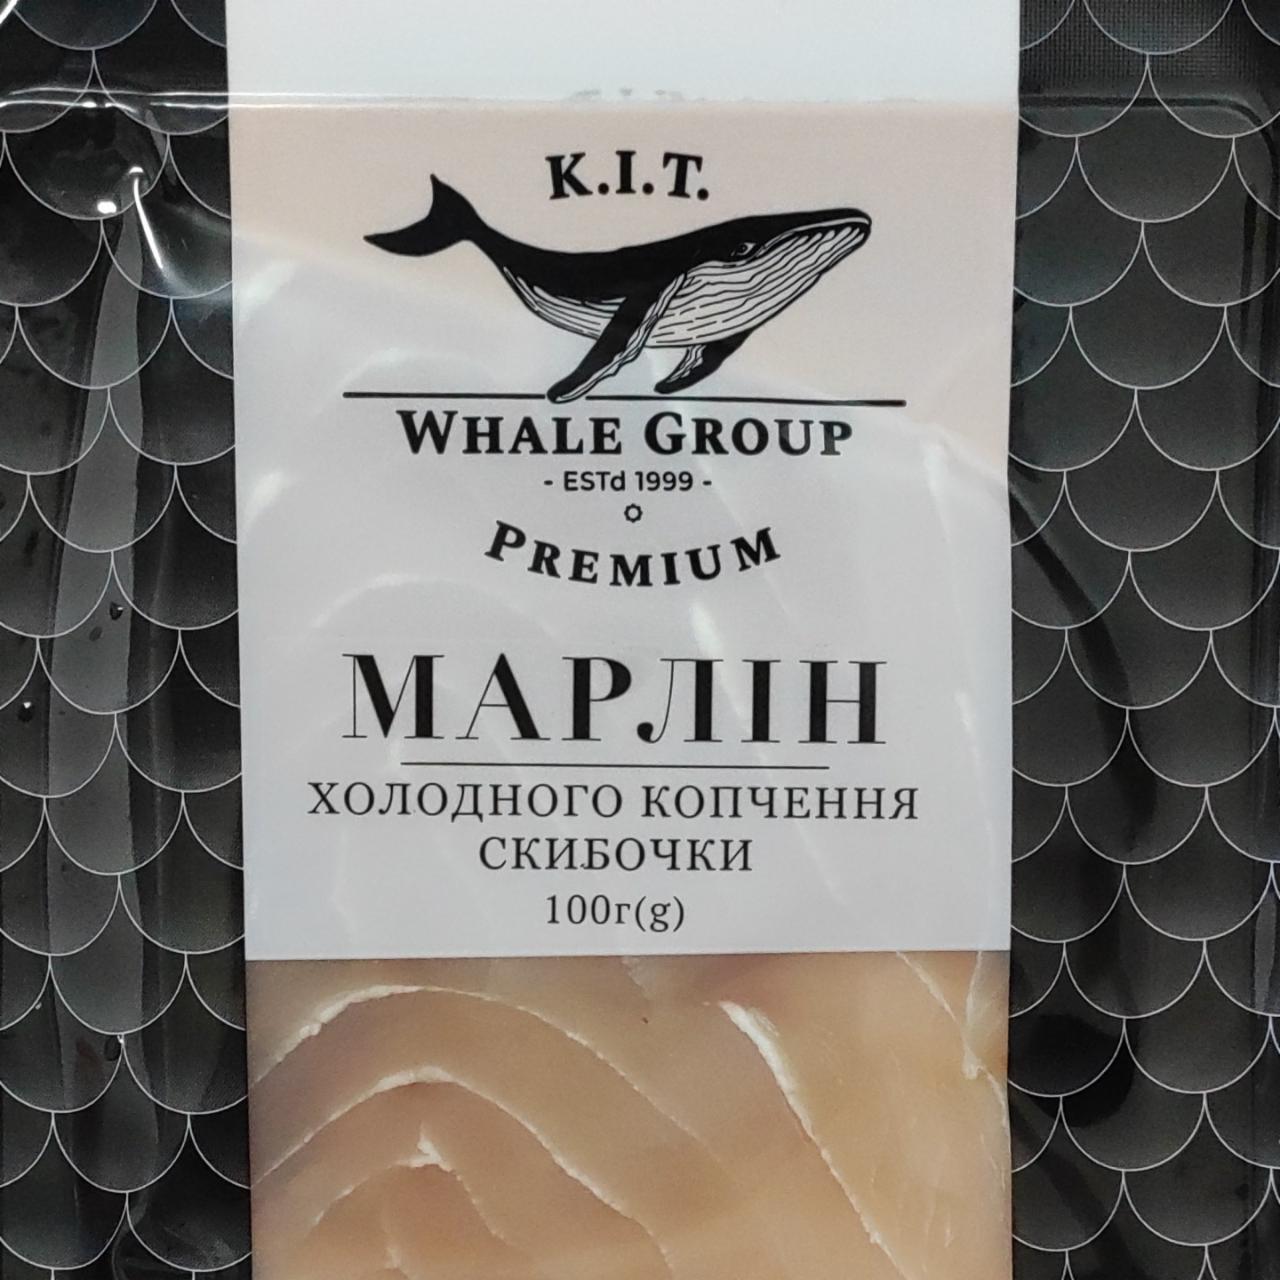 Фото - Марлін холодного копчення скибочки K.I.T Whale Group